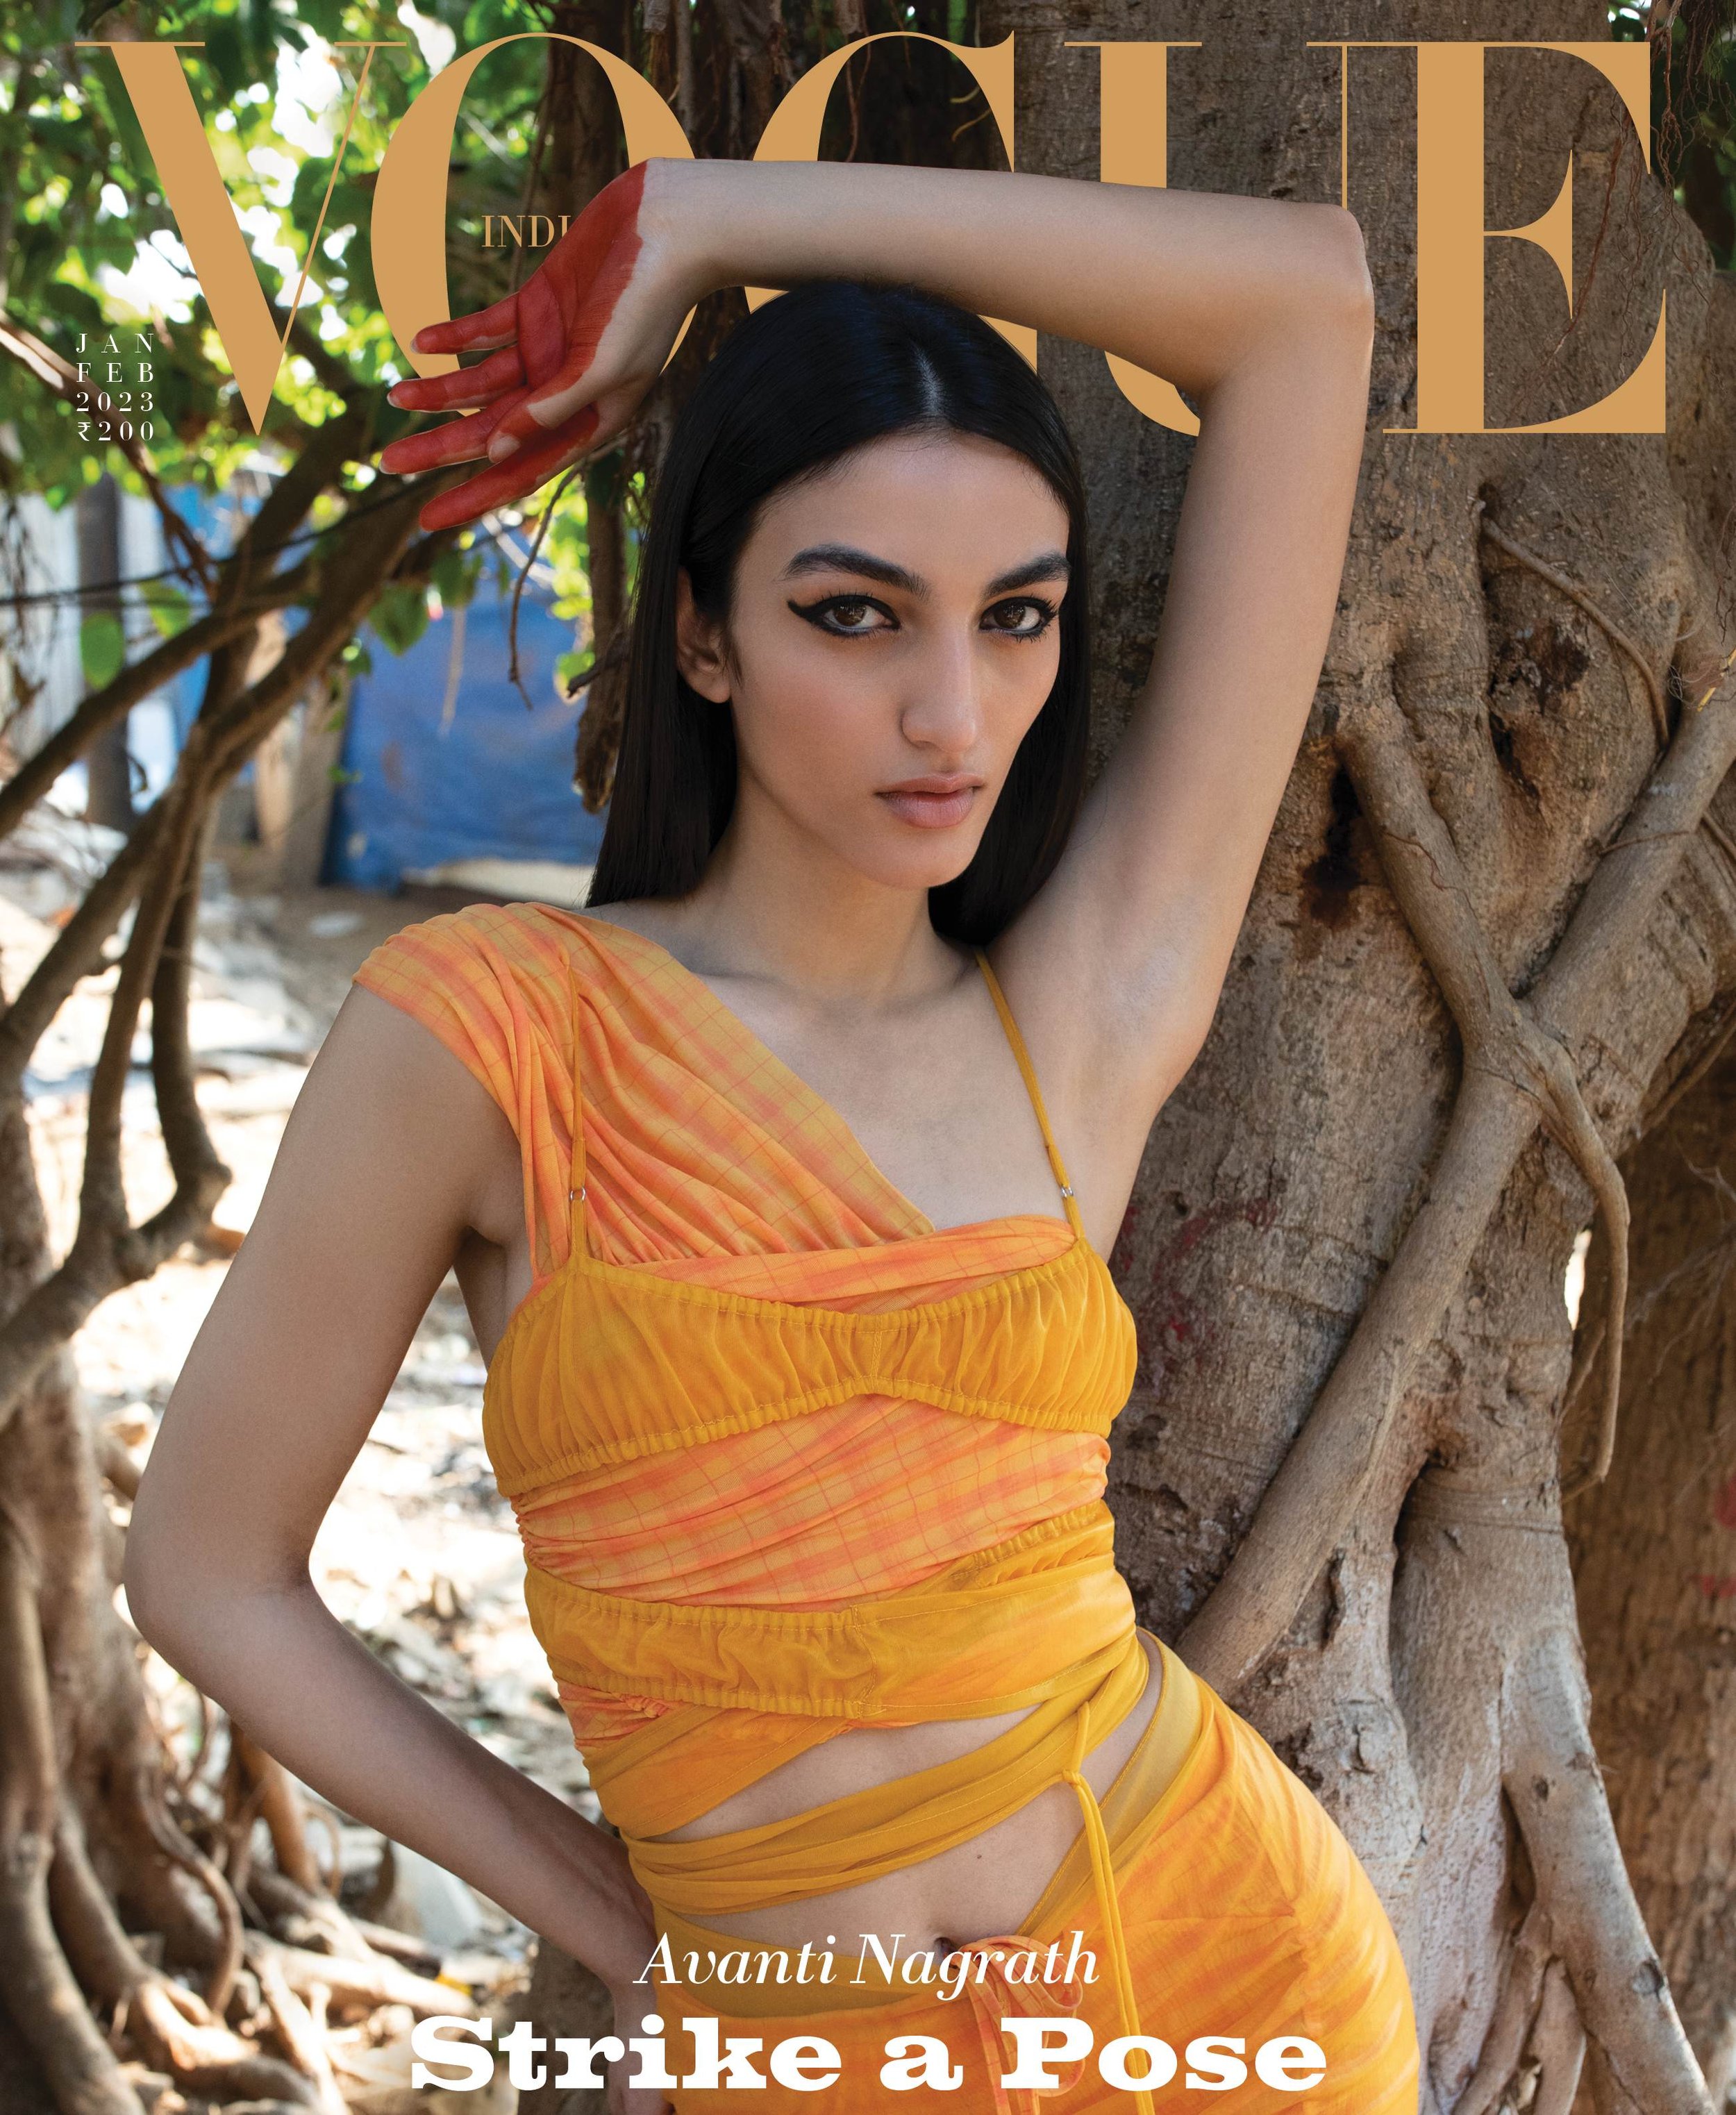 Vogue India January-February 2023 cover - Avanti Nagrath - Photographed by NICK SETHI - 2.jpeg